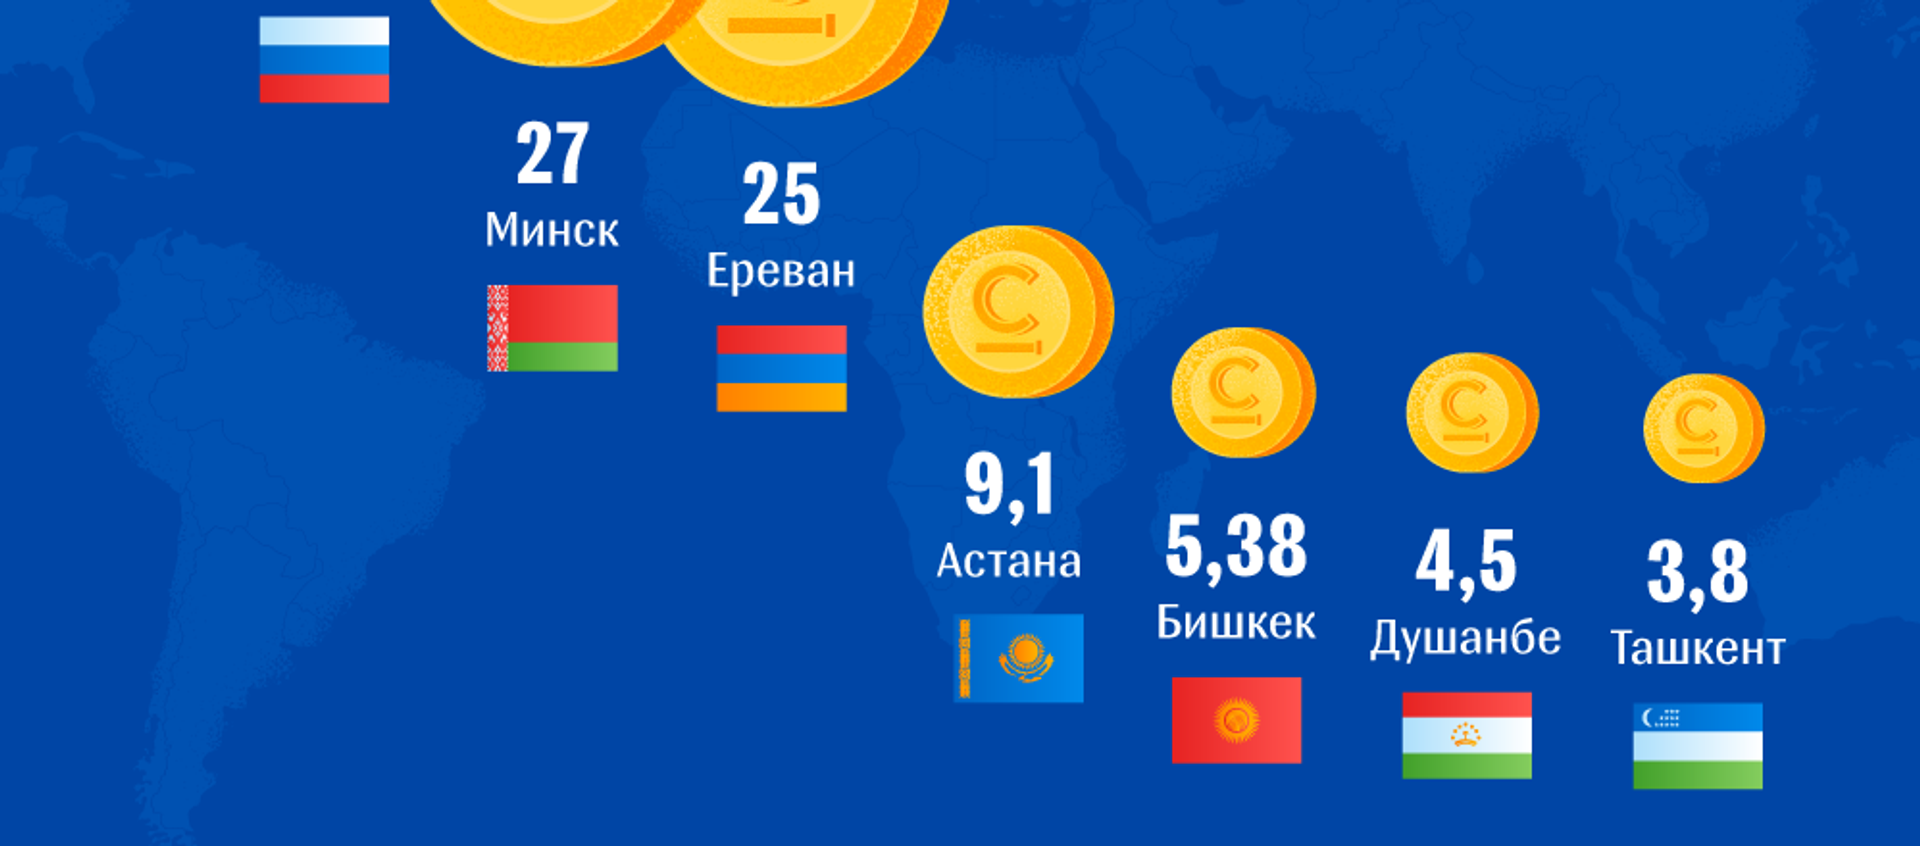 Сколько стоит холодная вода в разных странах - Sputnik Кыргызстан, 1920, 30.07.2018